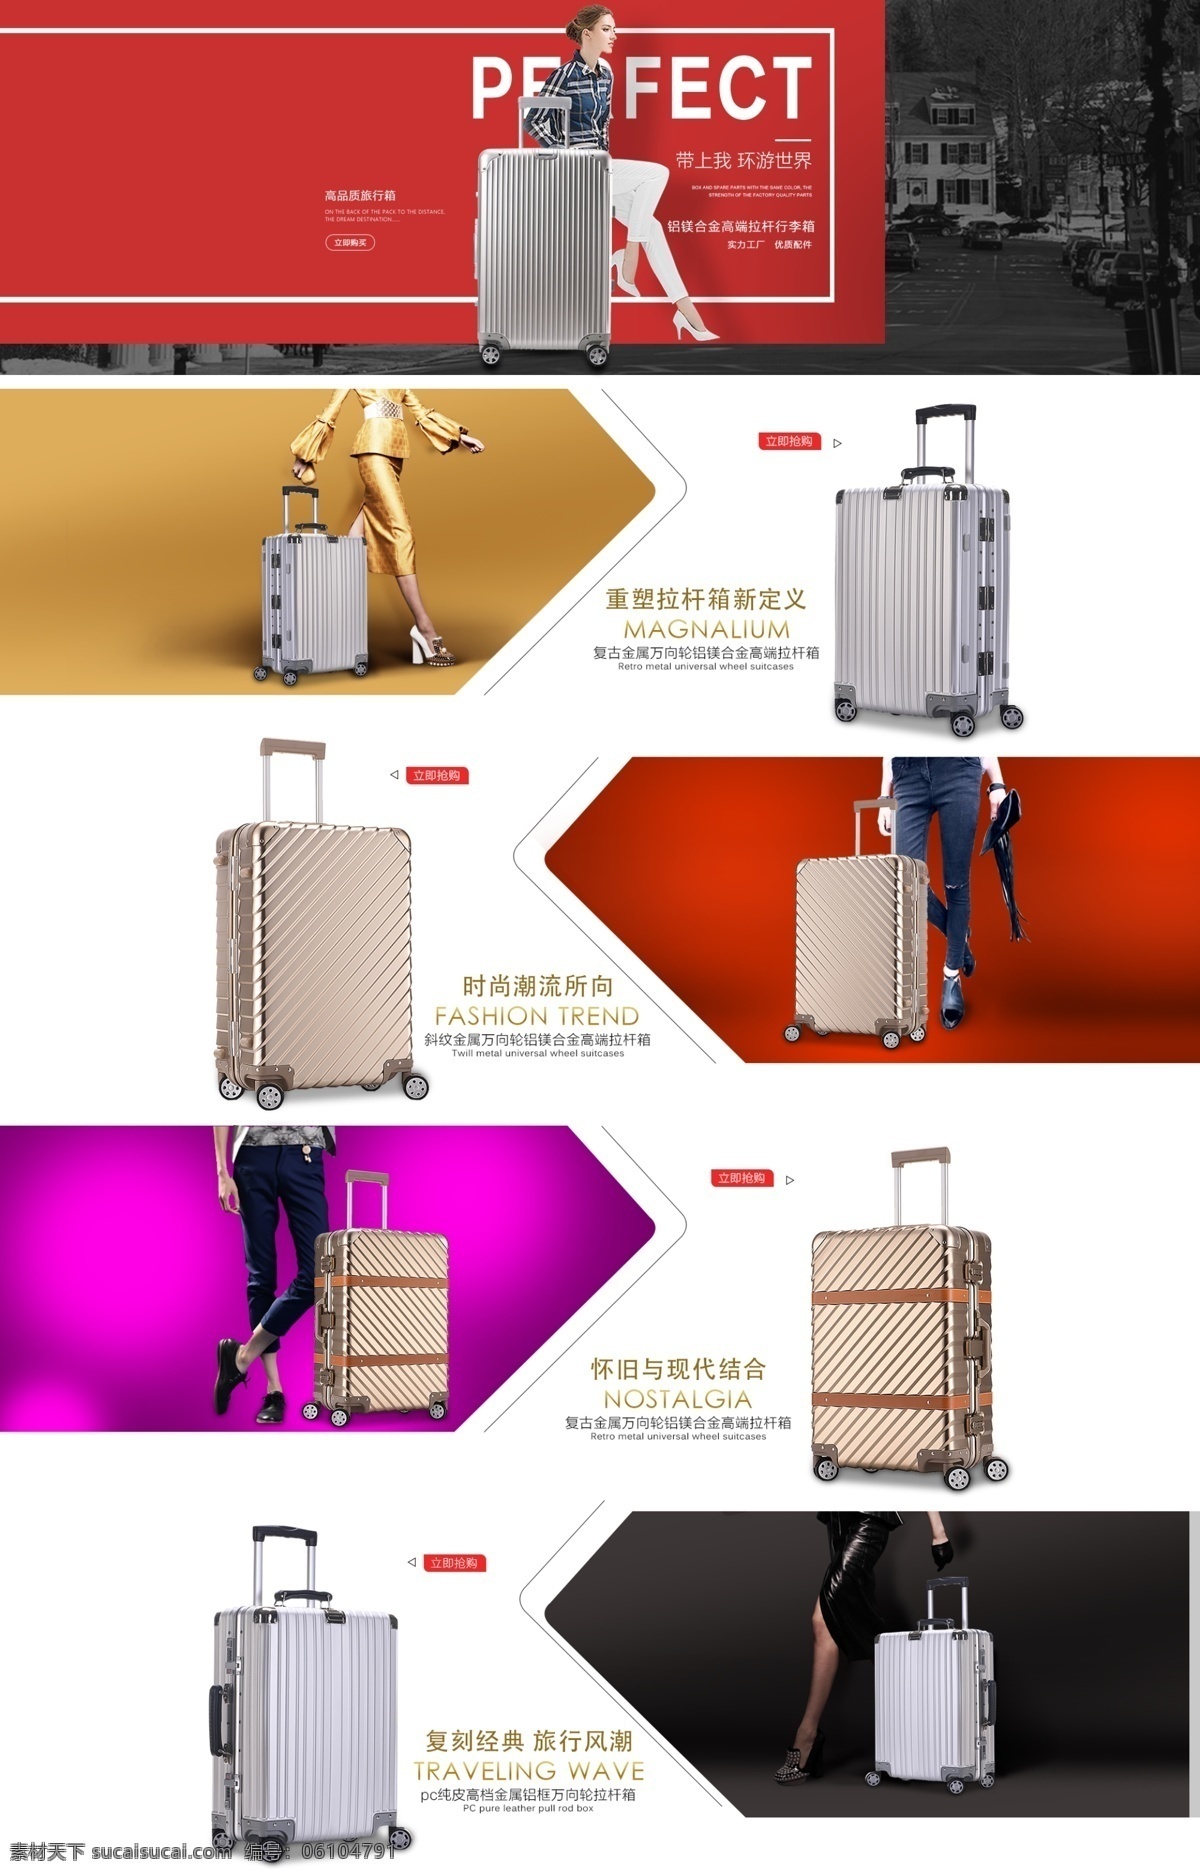 箱包首页 色块版面 高清 设计图 旅行素材 设计素材 模板设计